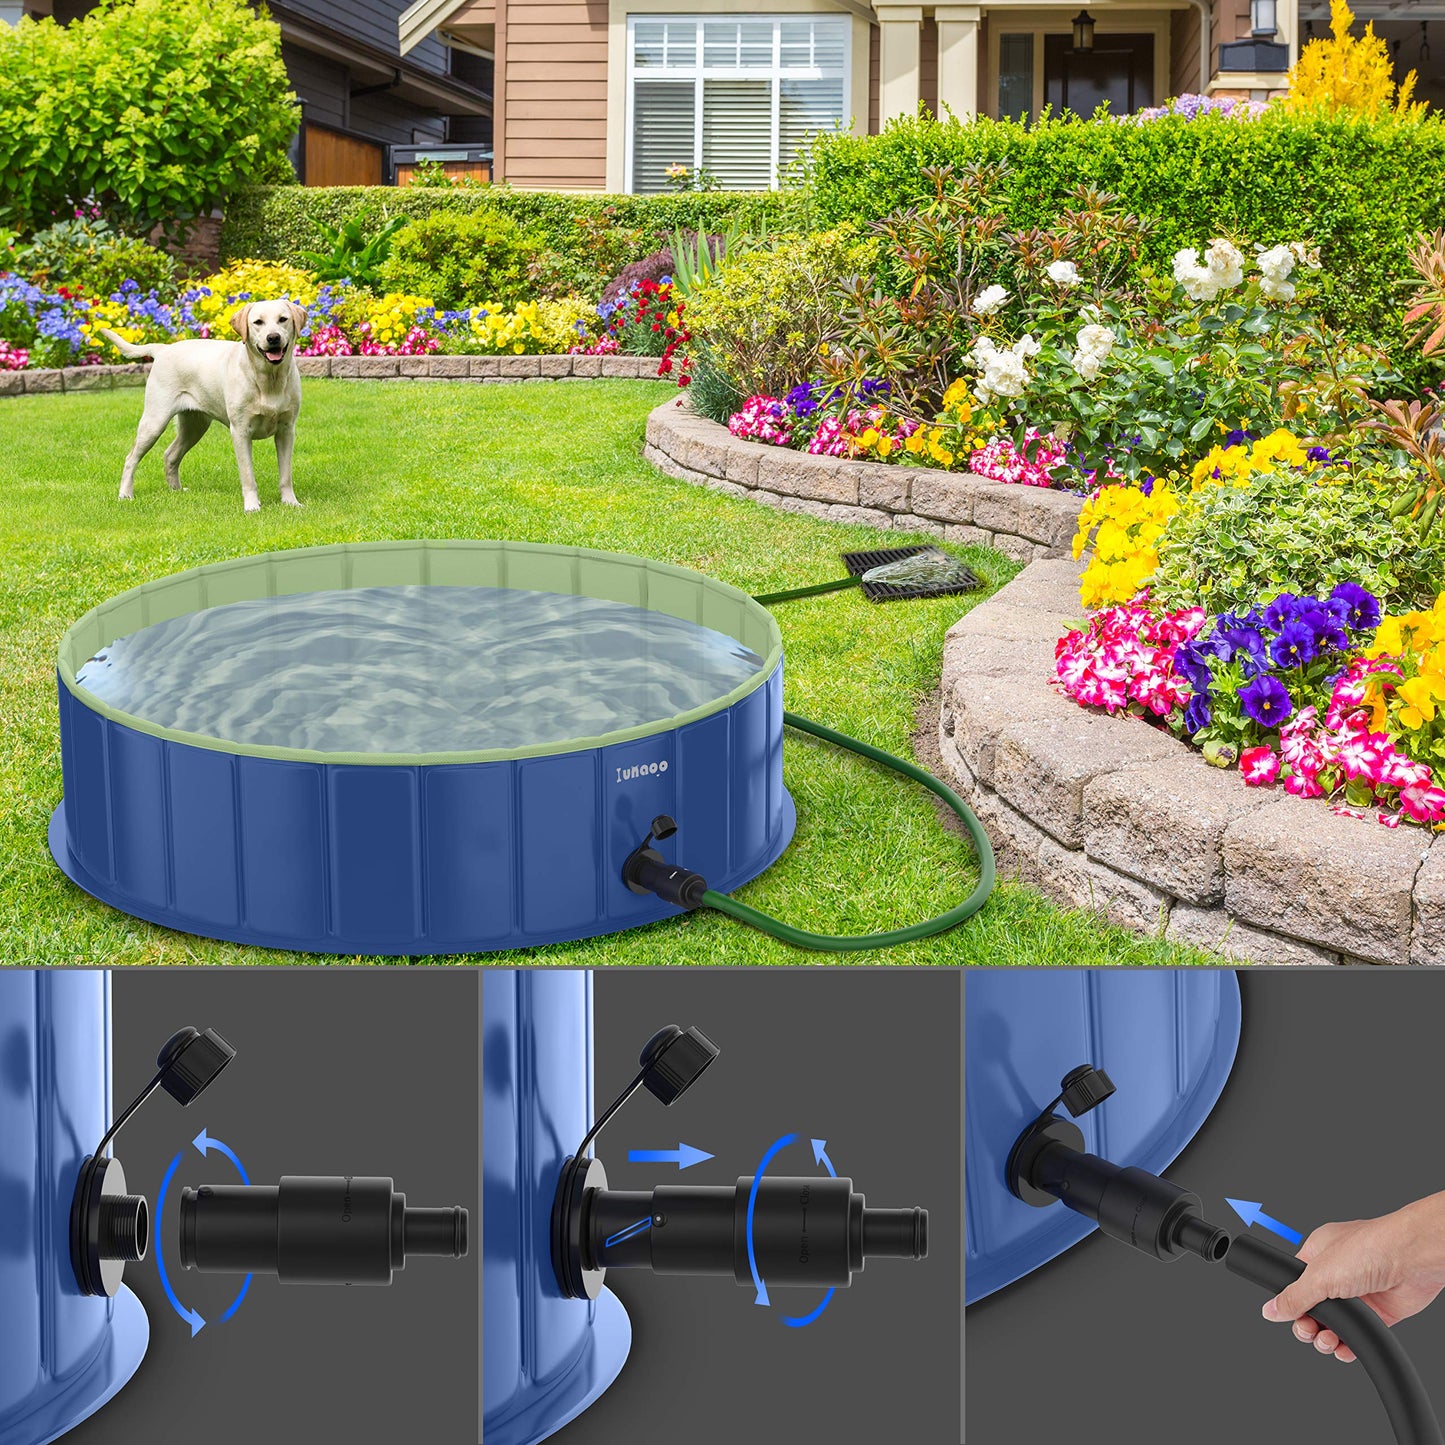 Piscine pliable pour chien par LUNAOO - Piscine portable pour enfants, piscine extérieure en PVC durable pour grands petits chiens (L - 47'' x 12'', bleu marine vert) L - 47'' x 12''